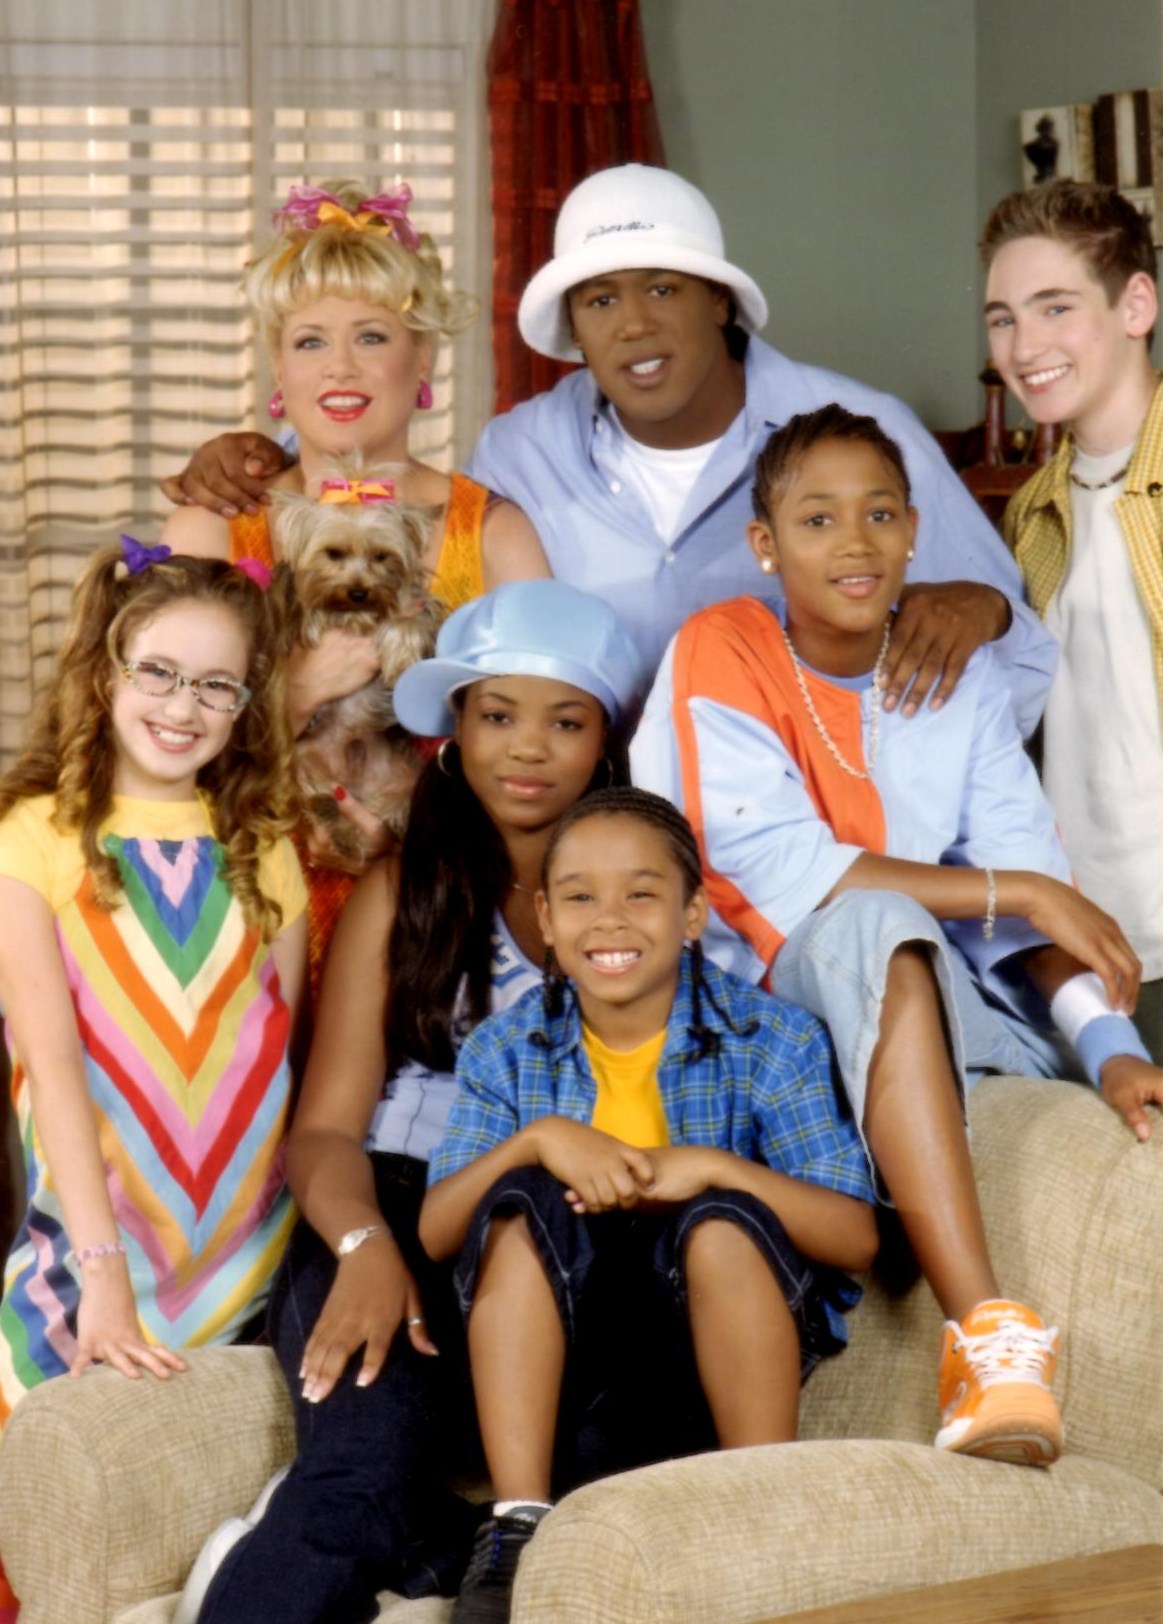 Zachary Isaiah Williams, Master P, Romeo Miller & the cast of Nickelodeon's ROMEO!